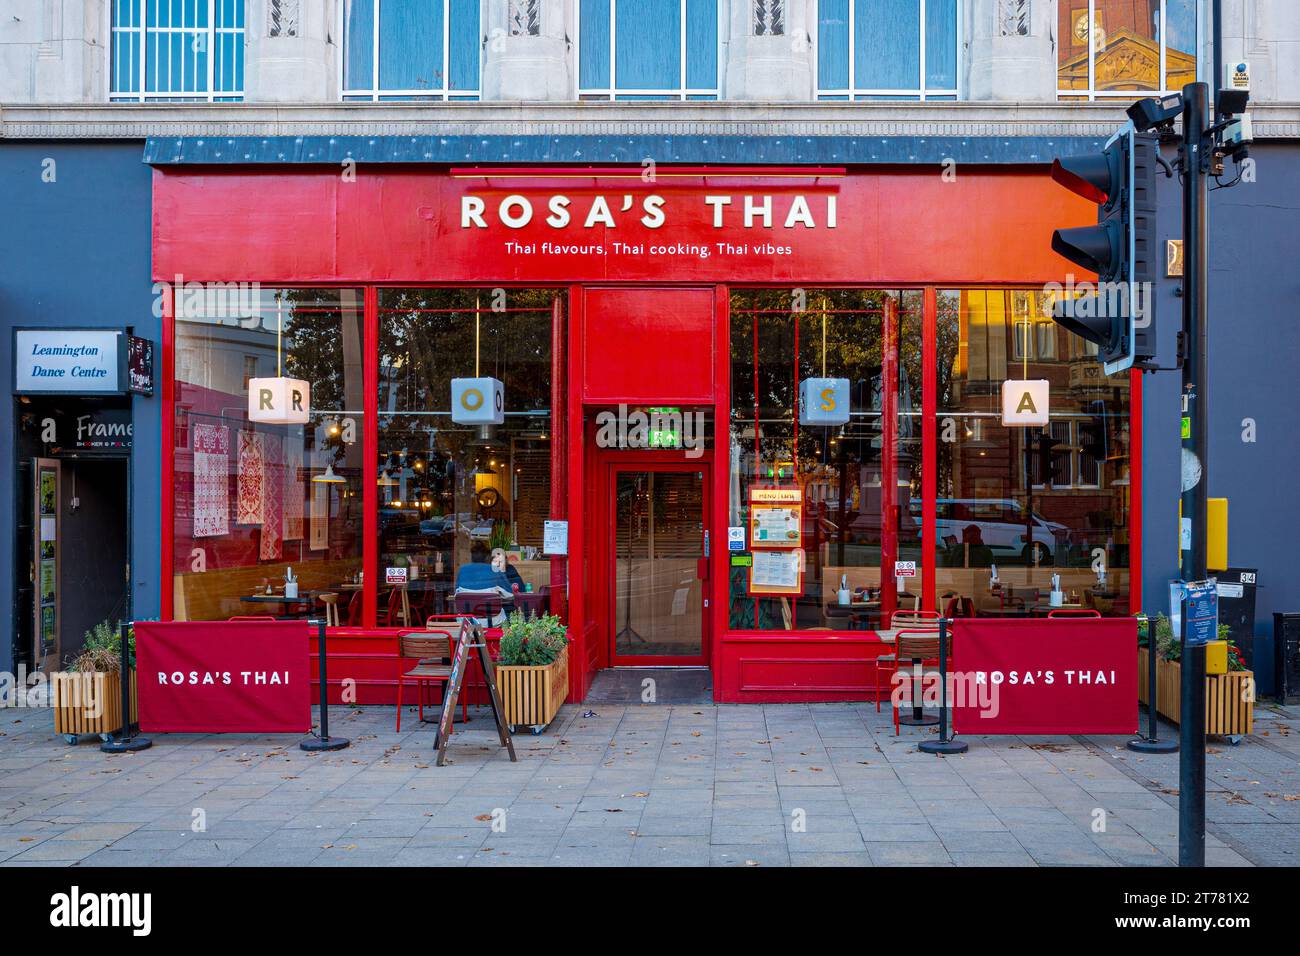 Restaurante tailandés Rosas Leamington Spa. Rosas es una pequeña cadena de restaurantes tailandeses fundada en Londres en 2008. Foto de stock